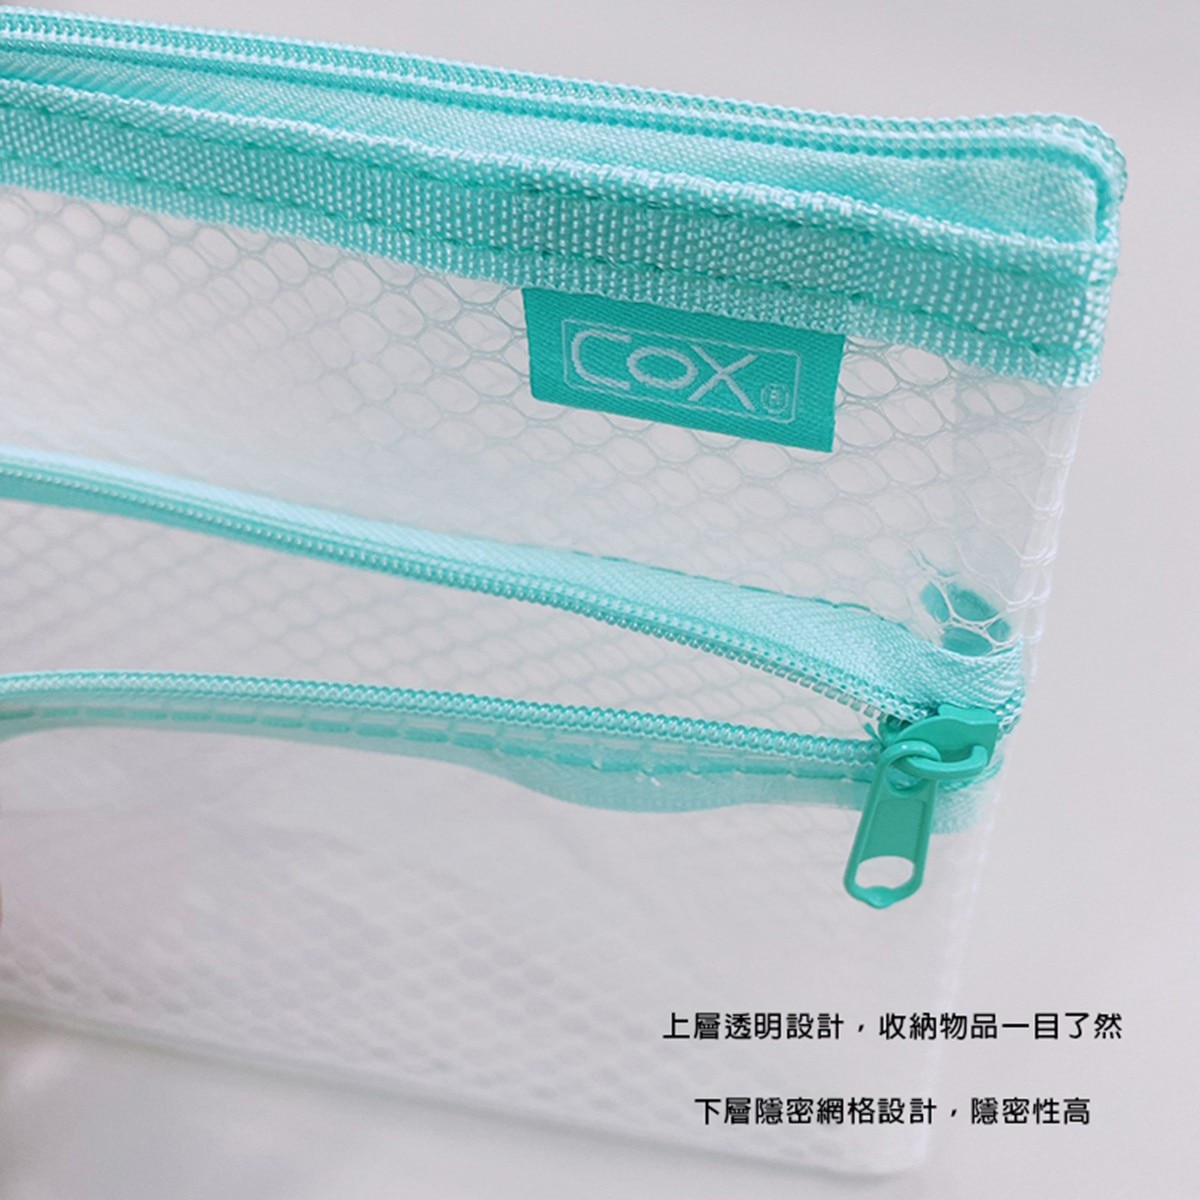 COX B5環保雙層【網格+透明】收納拉鍊袋，EVA環保材質，安全無毒，貼心收納、多樣收納一袋搞定。